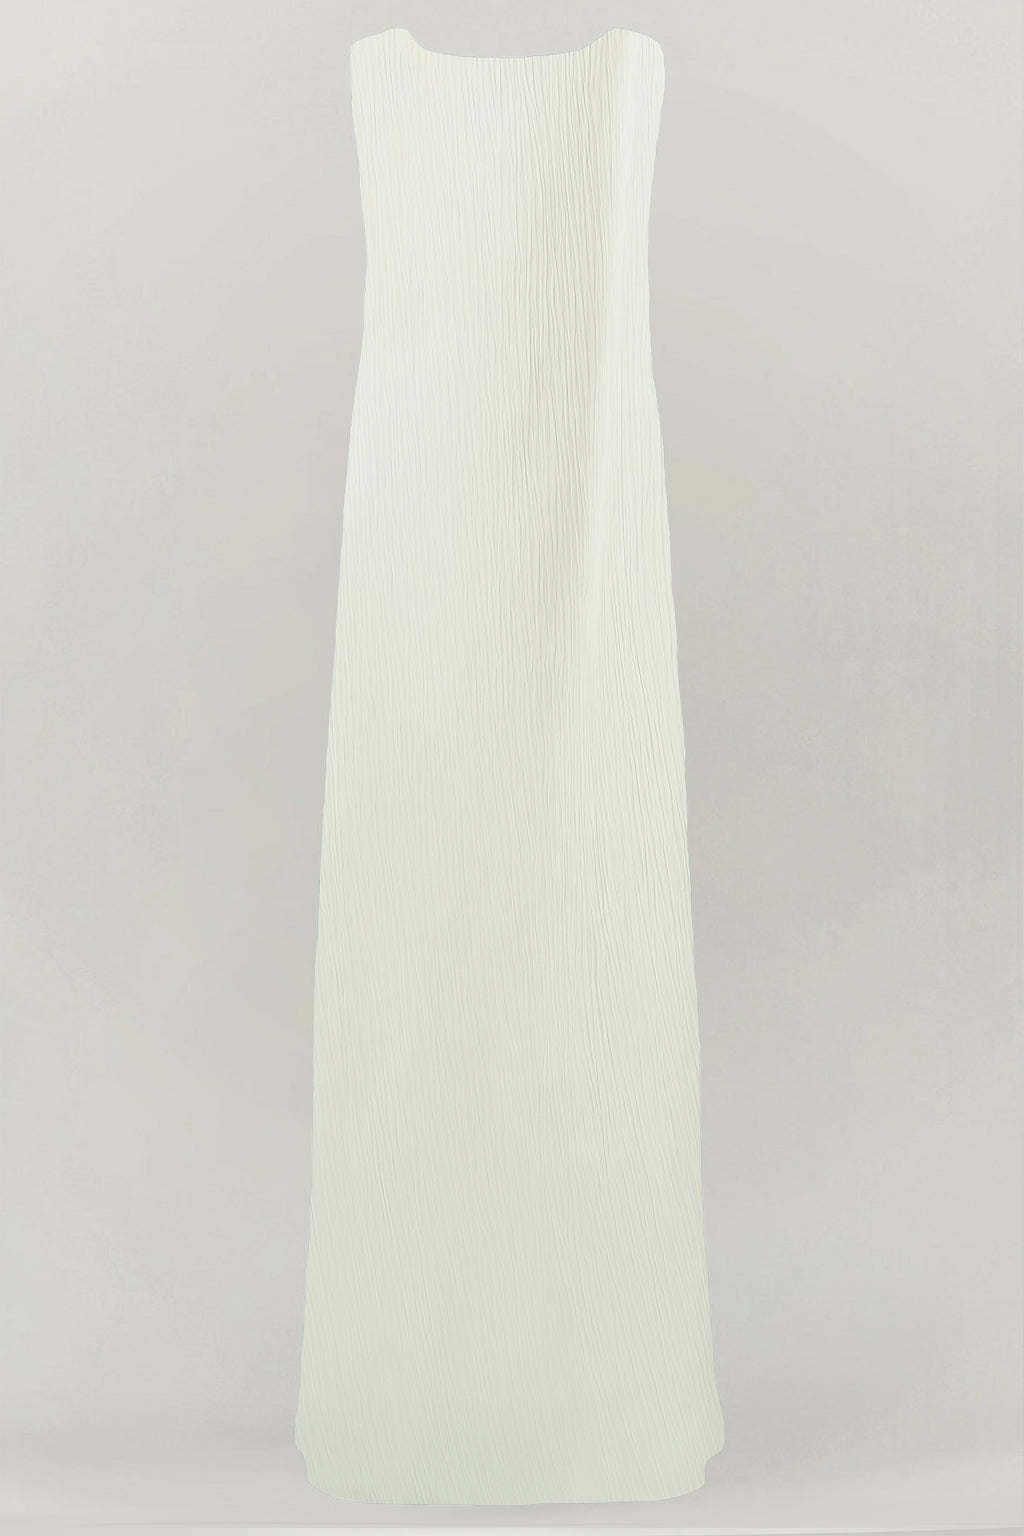 thowby off white under abaya dress 